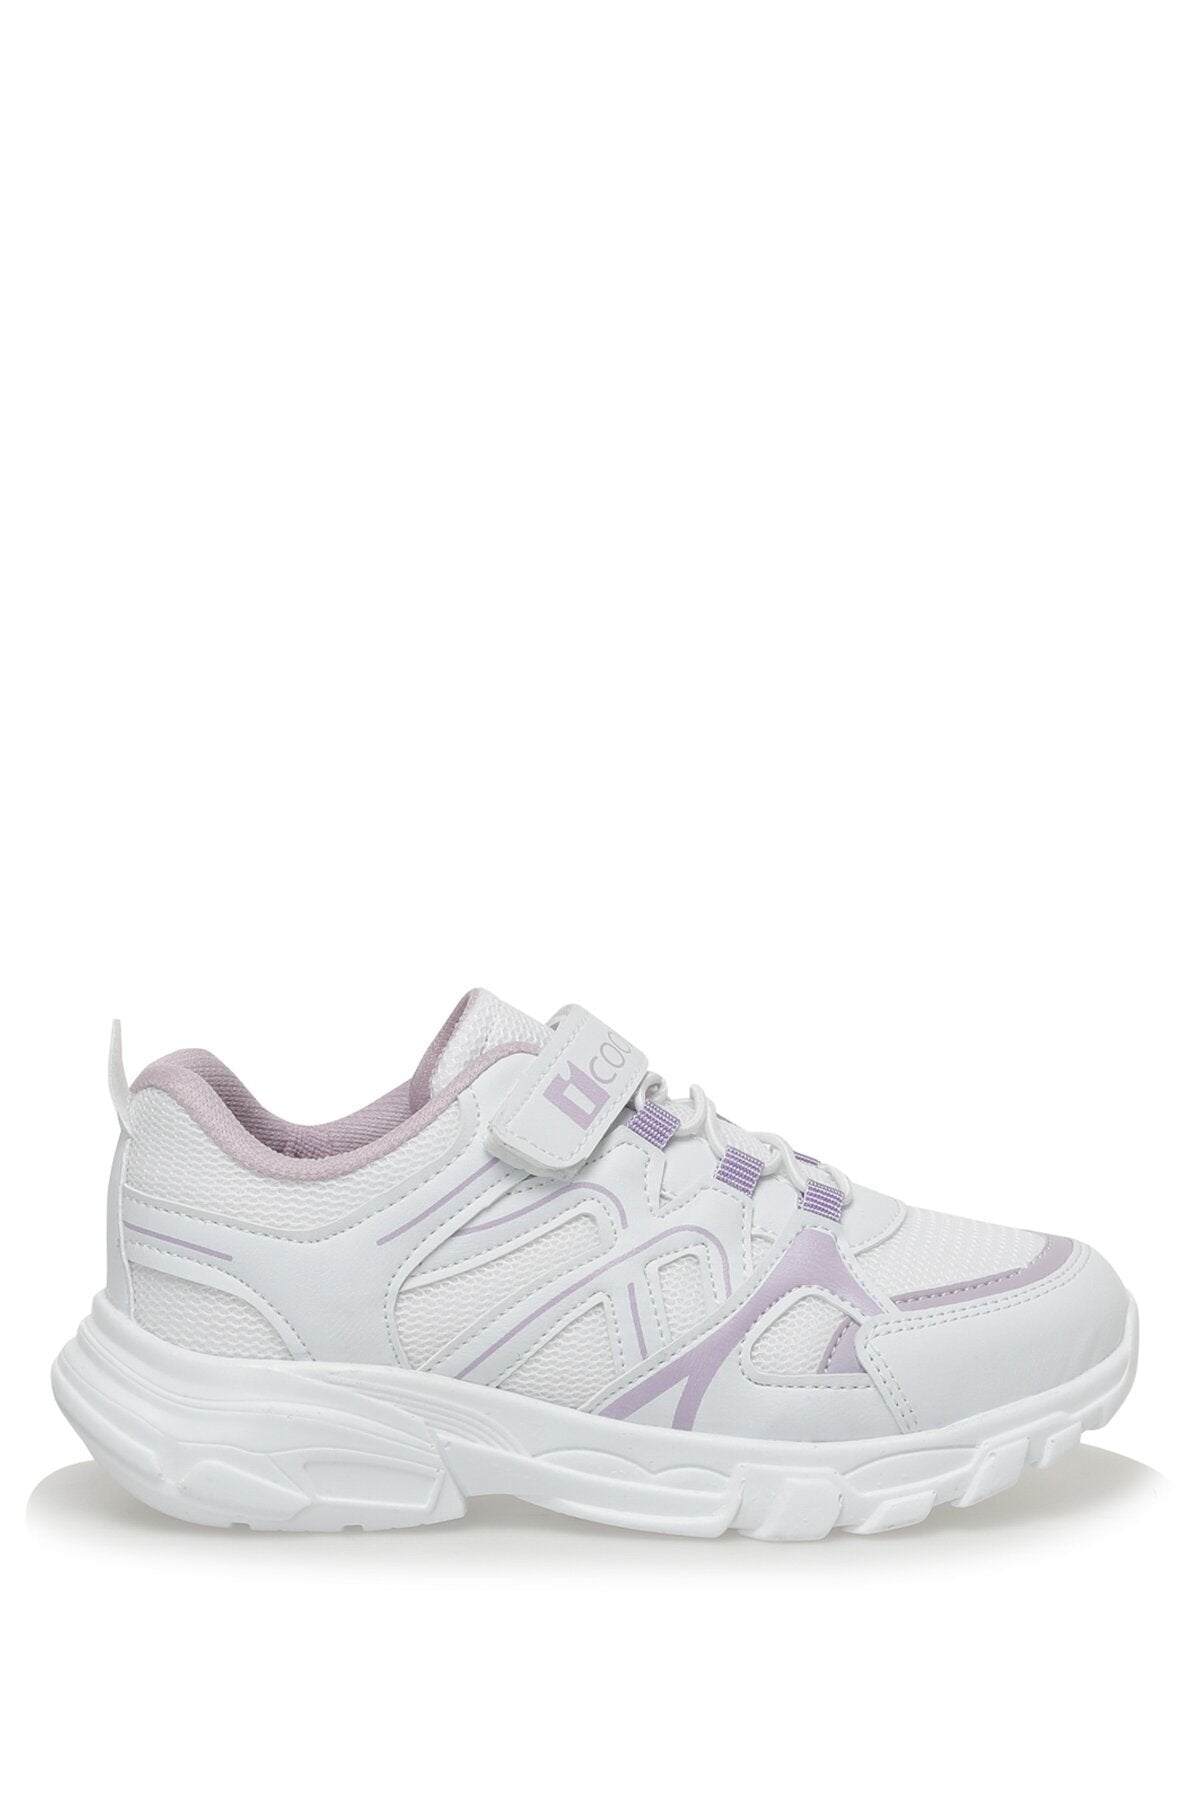 Hugo 3fx White Girls Sneakers